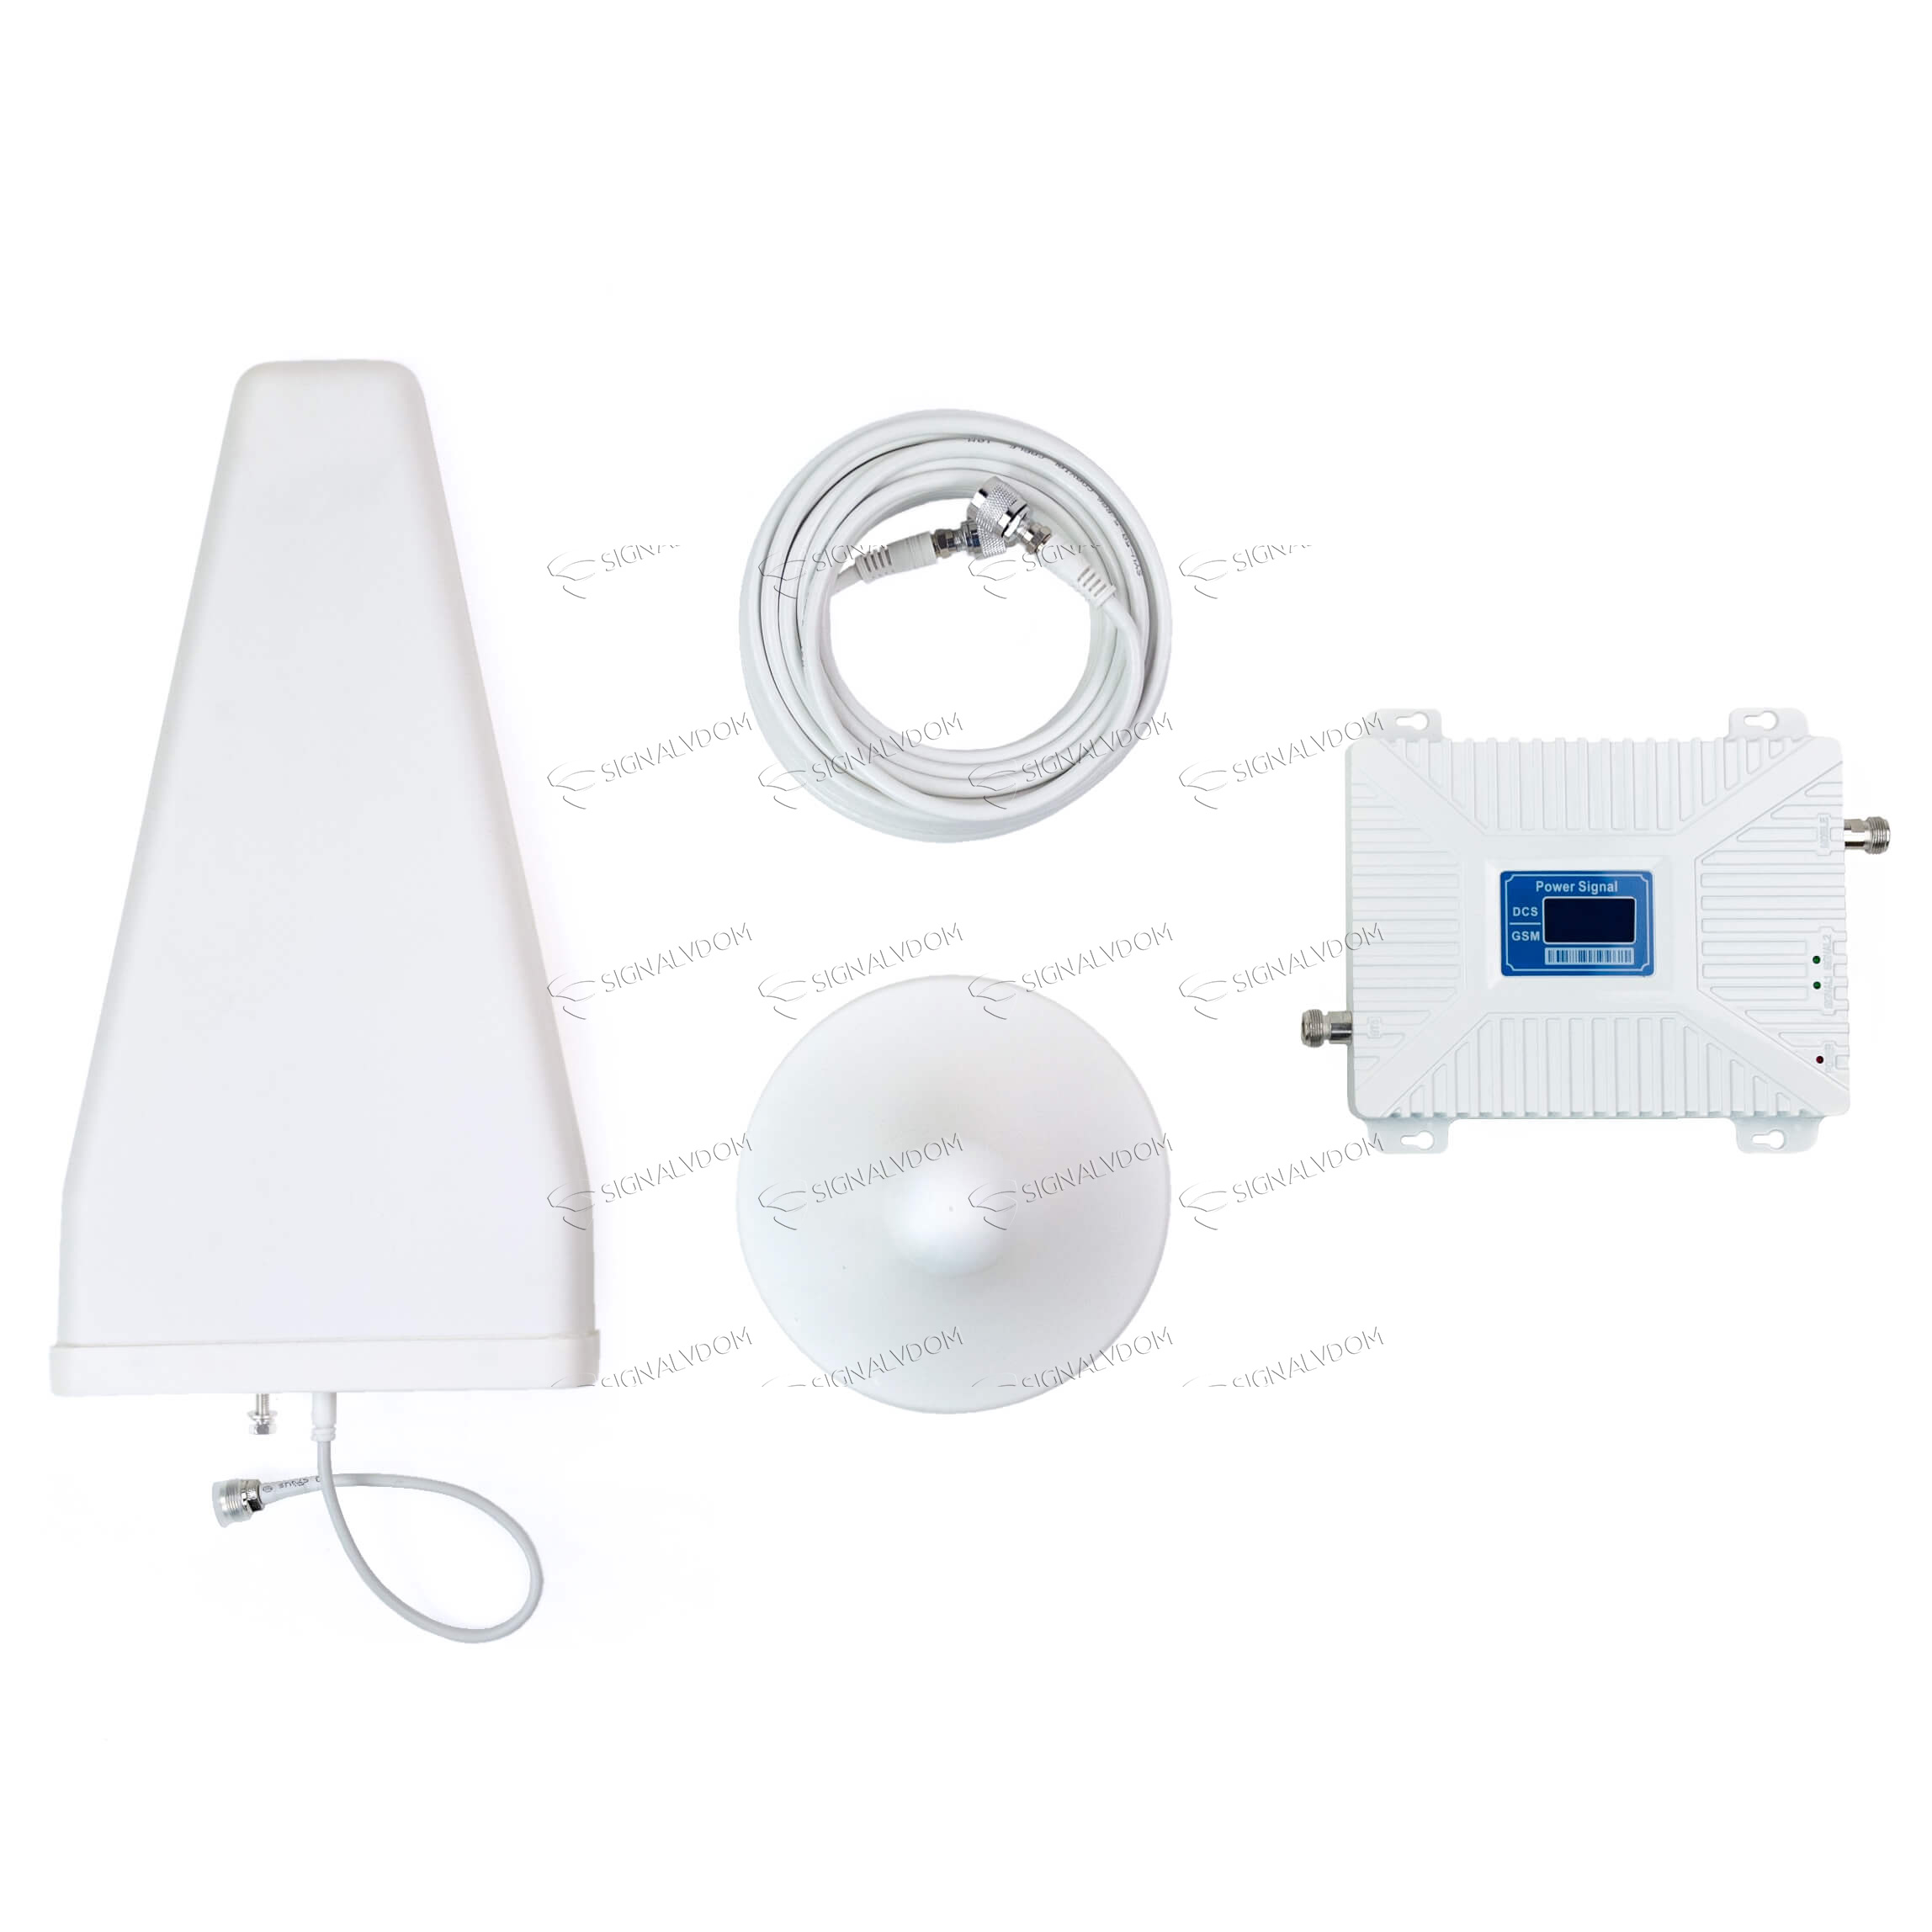 Усилитель сигнала Power Signal Dual Band 900/1800 MHz (для 2G, 3G, 4G) 70 dBi, кабель 15 м., комплект